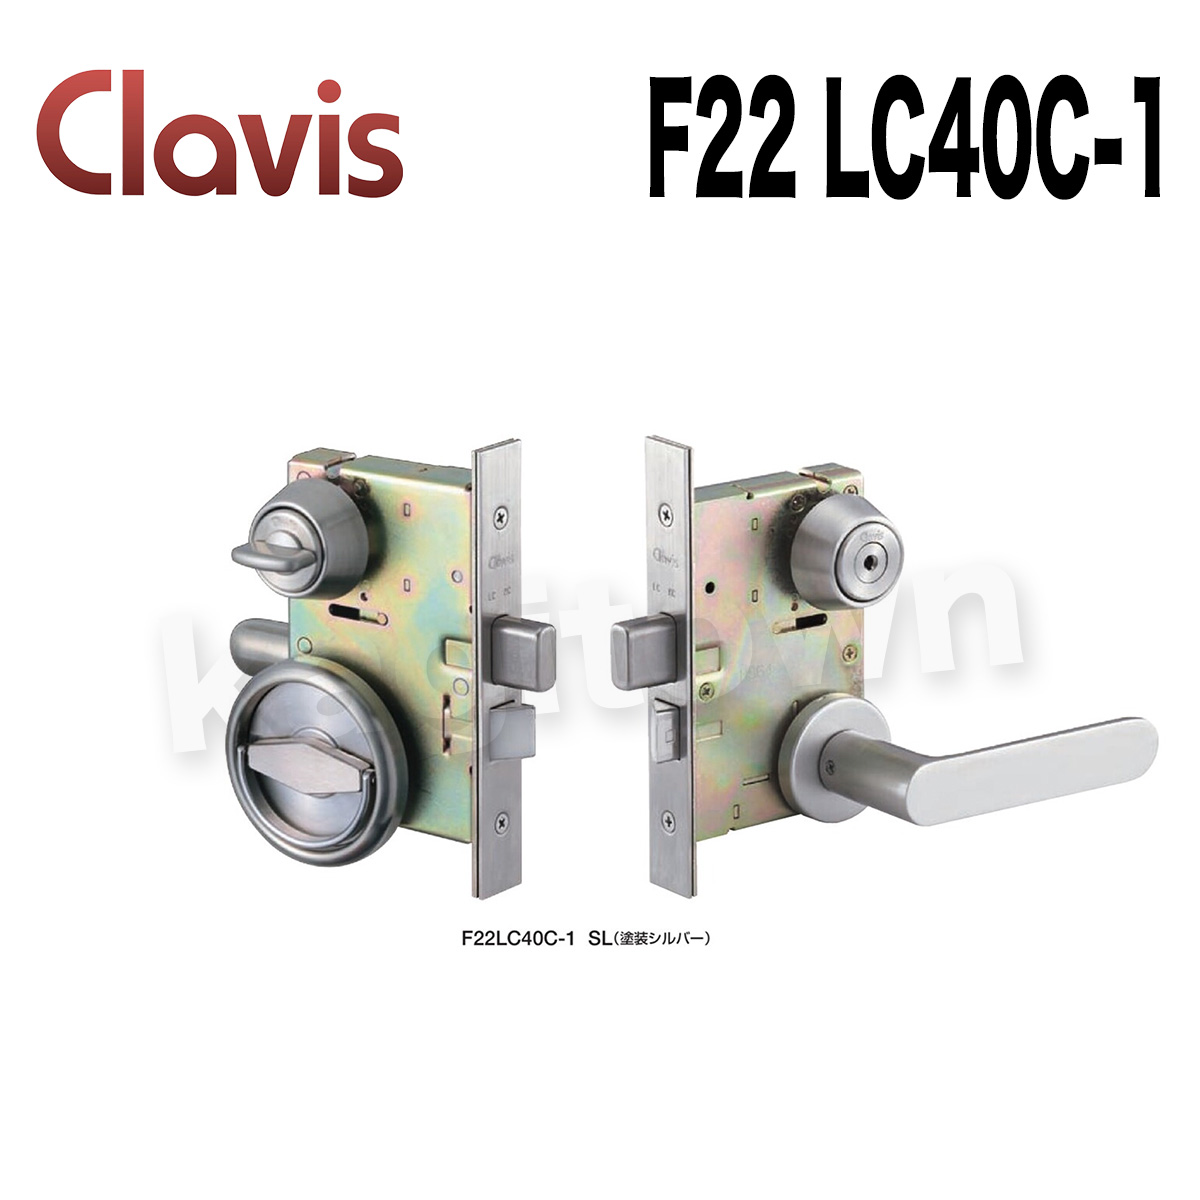 Clavis F22 LC40C-1【クラビス】レバーハンドル錠 納期1~3週間 内側がケースハンドルの仕様